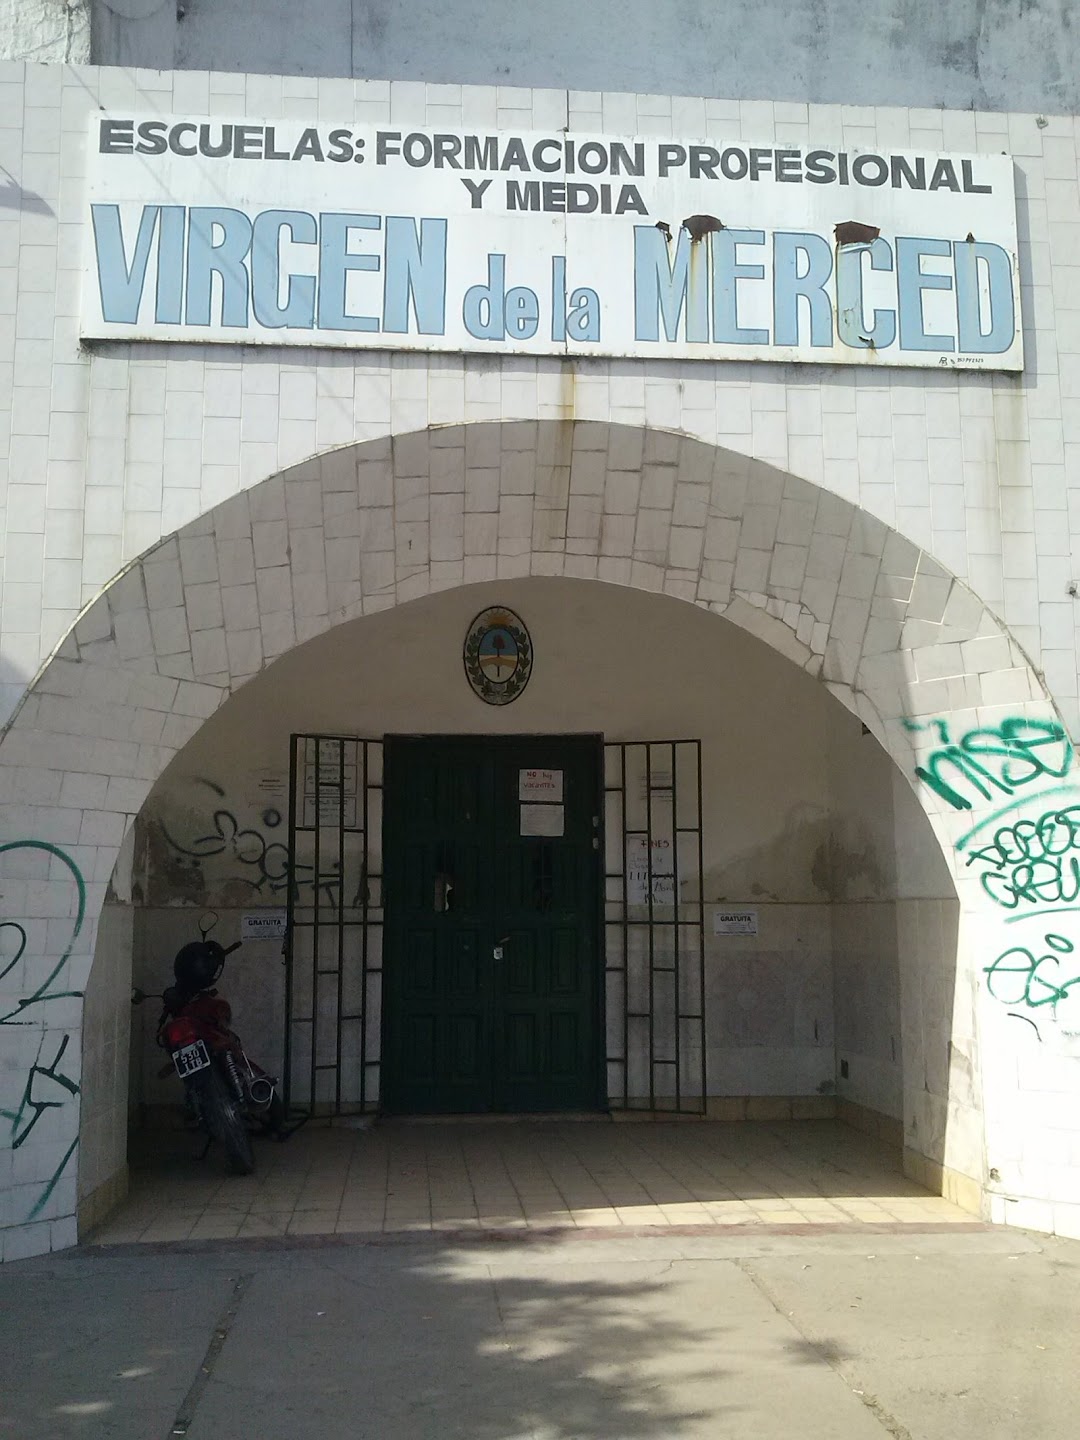 Escuela Media Virgen de La Merced y Formacion Profesional